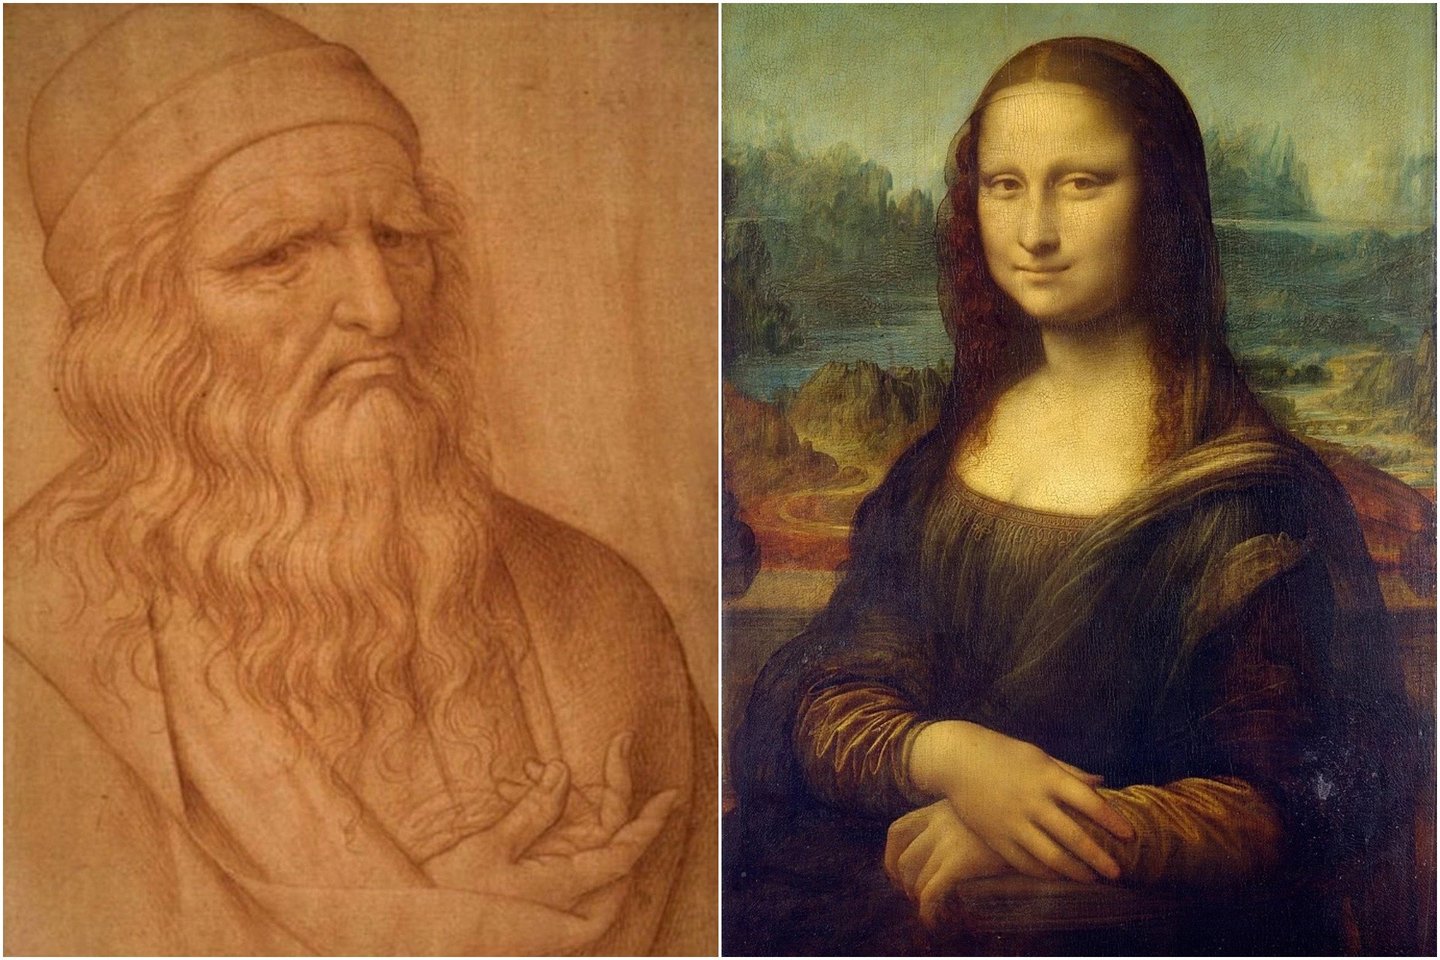  Alkūninio nervo suspaudimas“gali paaiškinti, kodėl jis paliko tiek daug neužbaigtų paveikslų, tame tarpe – ir „Moną Lizą“.<br> Giovanni Ambrogio Figino / Leonardo da Vinci pav.